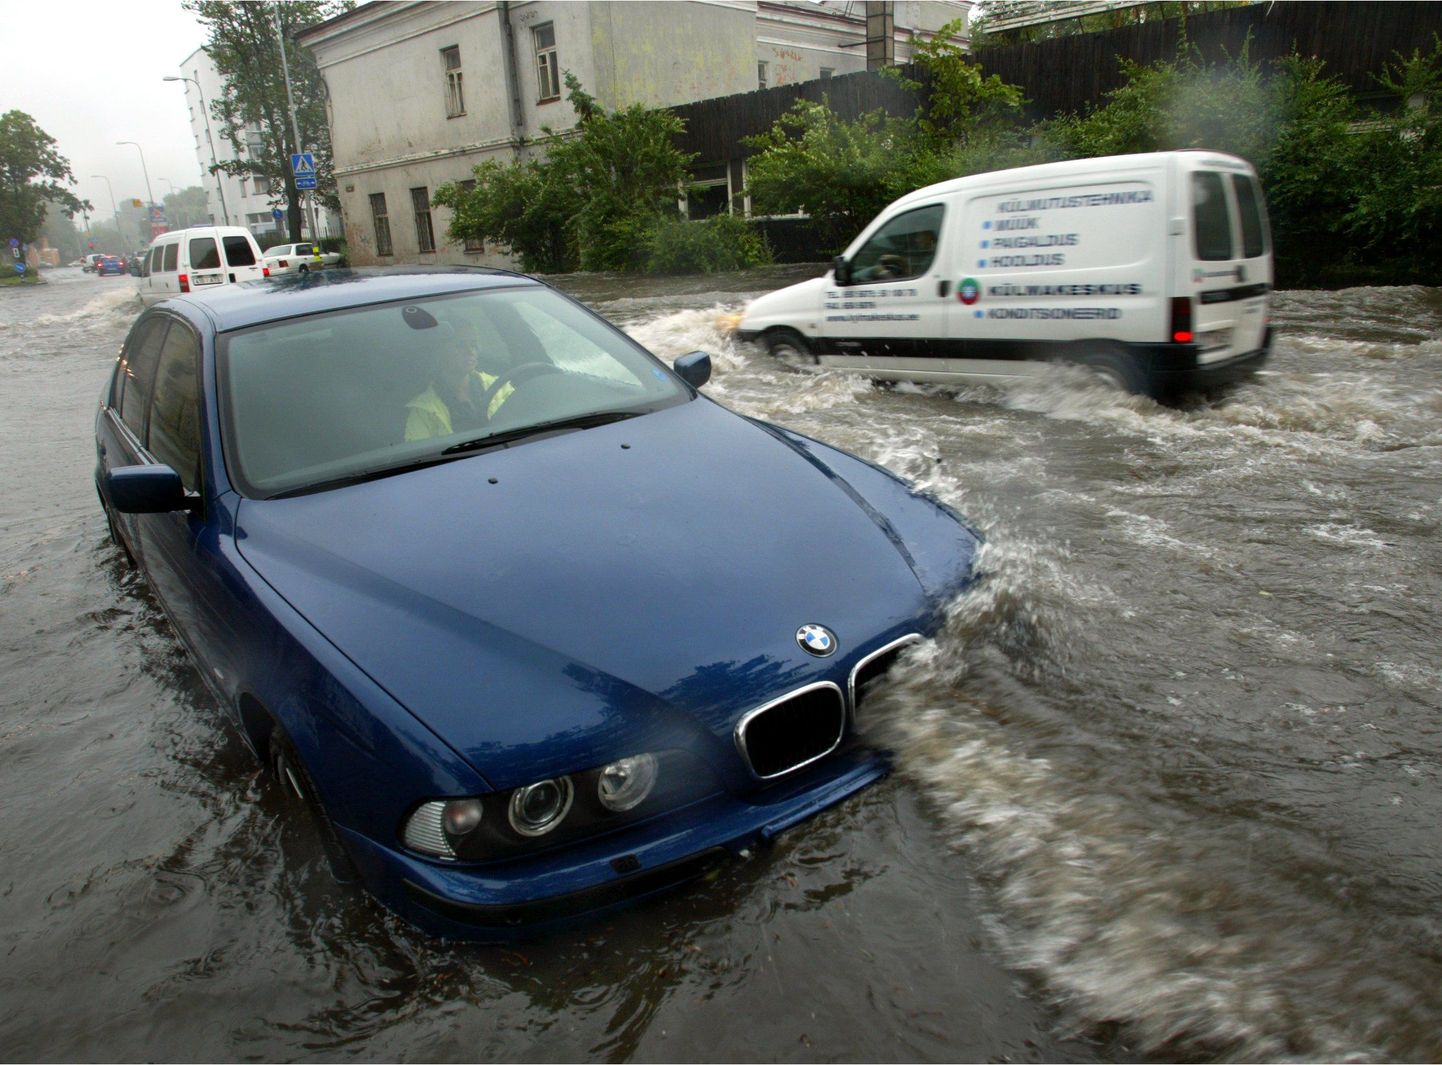 Tuukri tänaval on vihmad uputusi põhjustanud juba aastaid. See pilt on tehtud aastal 2004.